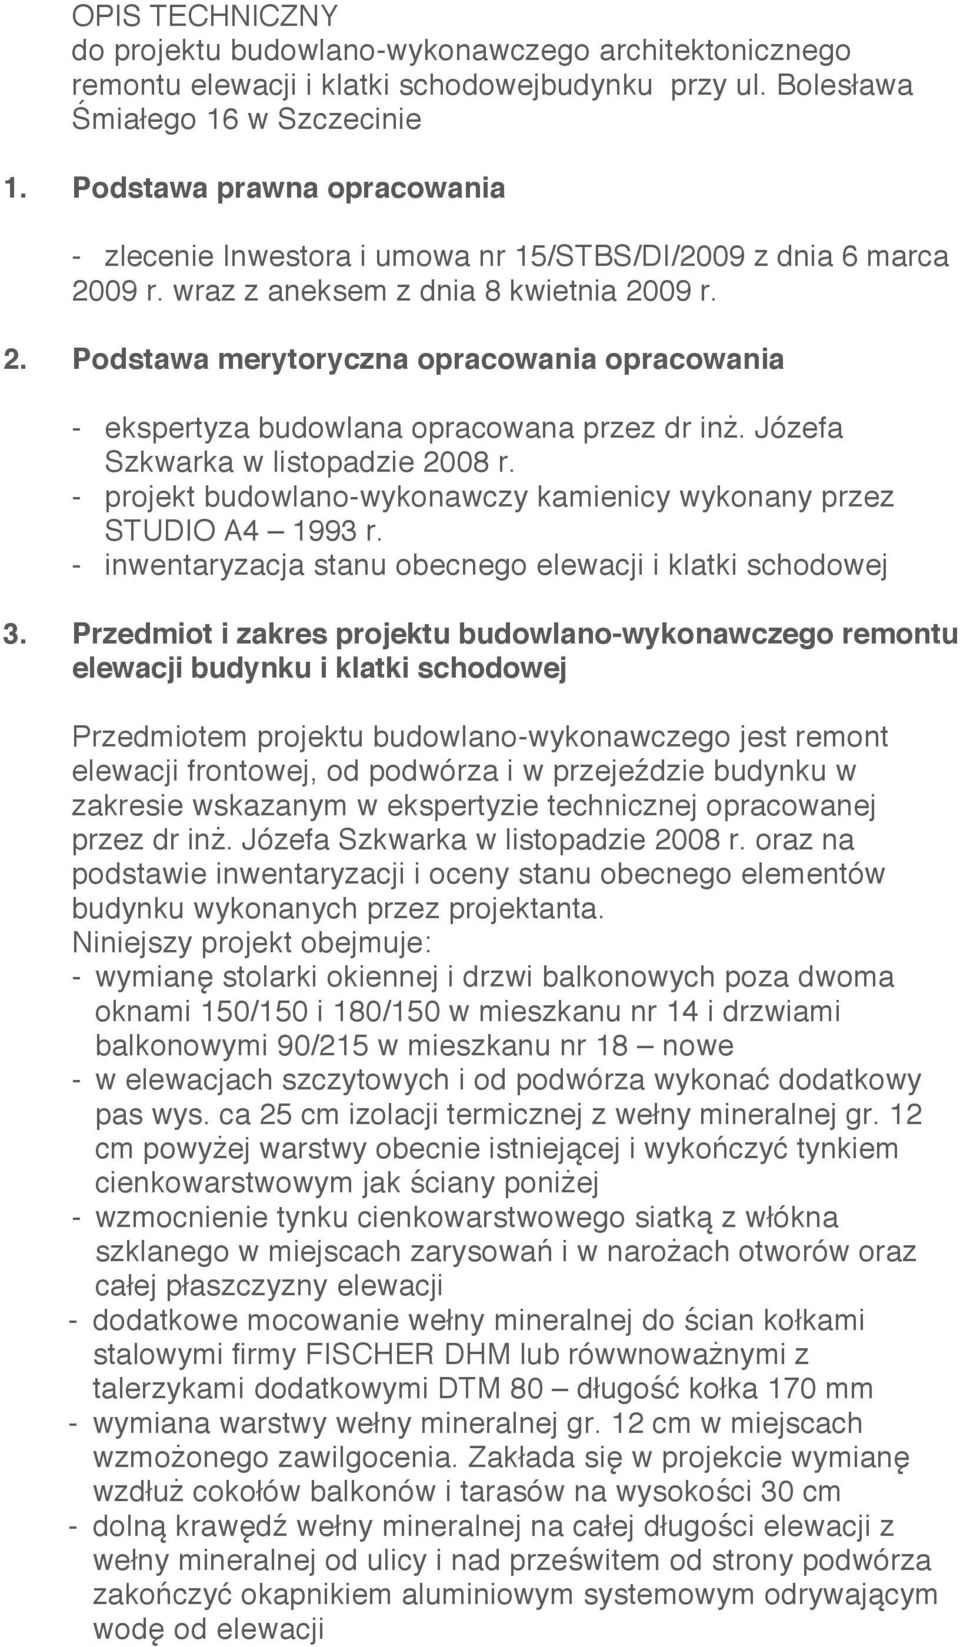 Józefa Szkwarka w listopadzie 2008 r. - projekt budowlano-wykonawczy kamienicy wykonany przez STUDIO A4 1993 r. - inwentaryzacja stanu obecnego elewacji i klatki schodowej 3.